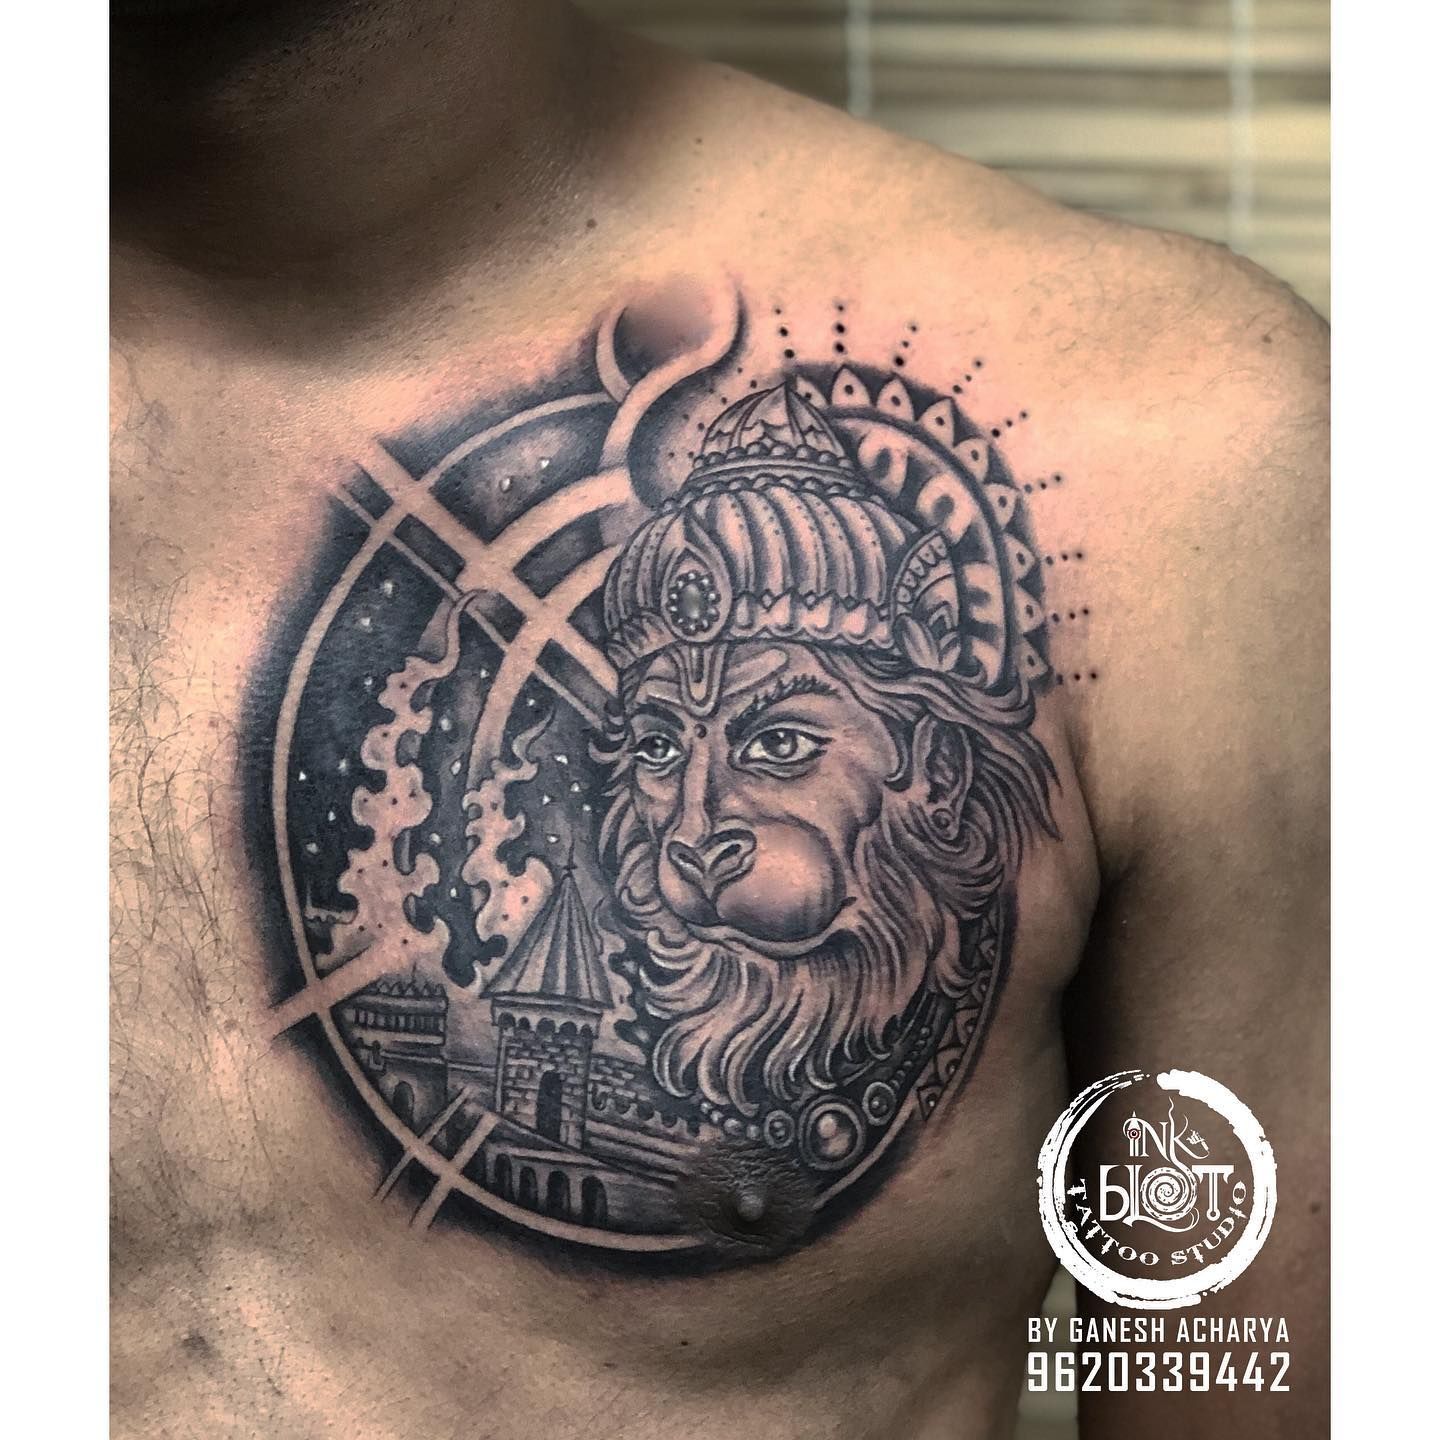 Lord Hanuman band tattoo  Inkblot tattoo  art studio  Facebook